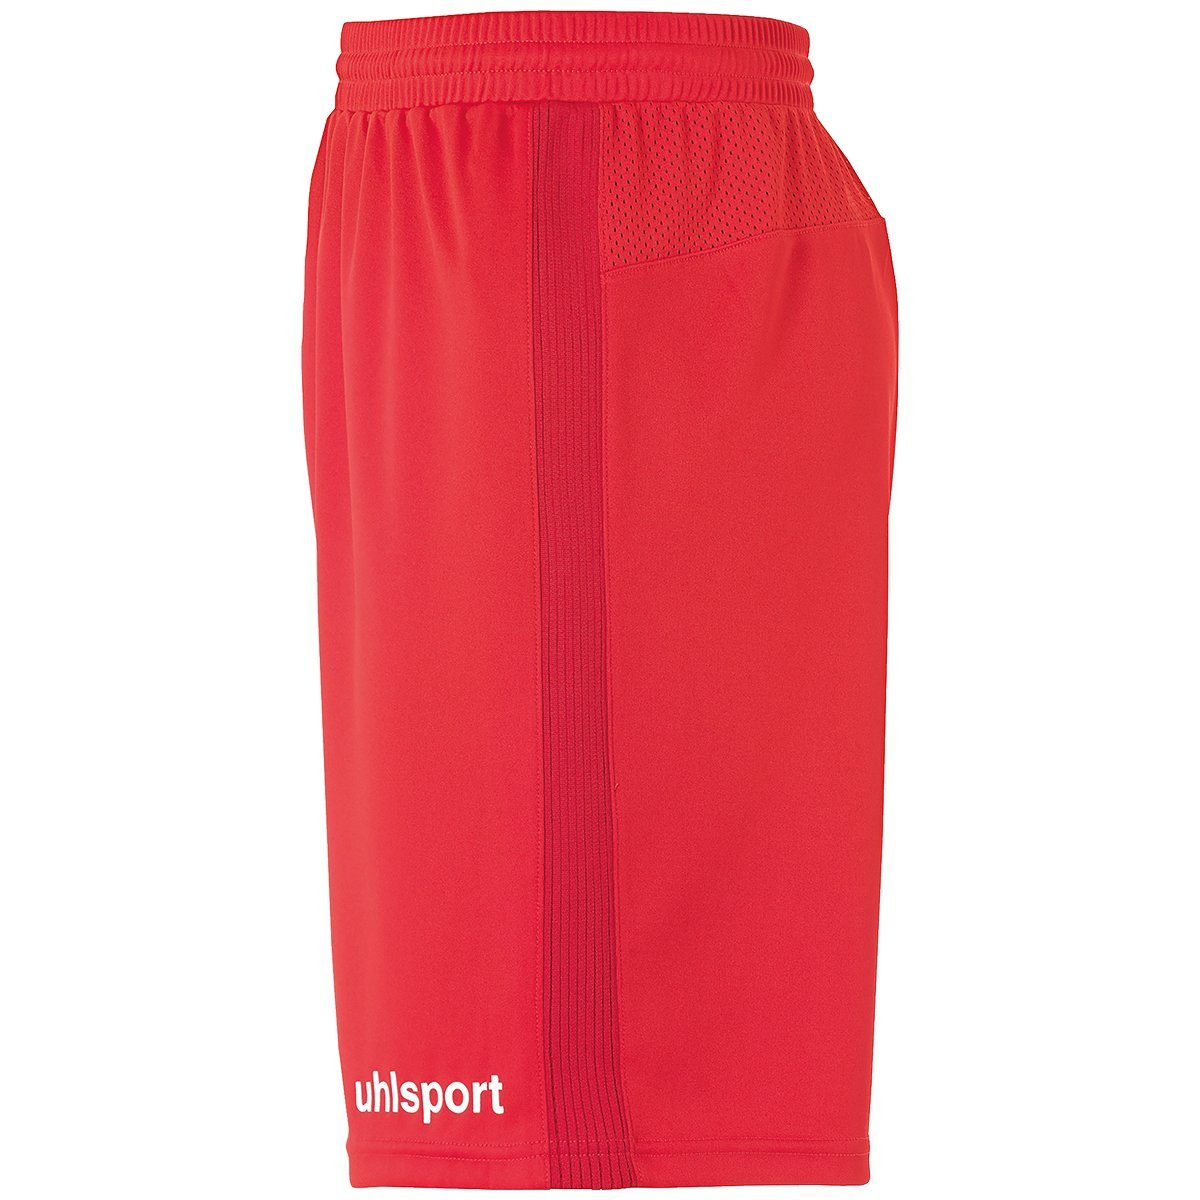 Shorts uhlsport Shorts SHORTS rot/weiß PERFORMANCE uhlsport